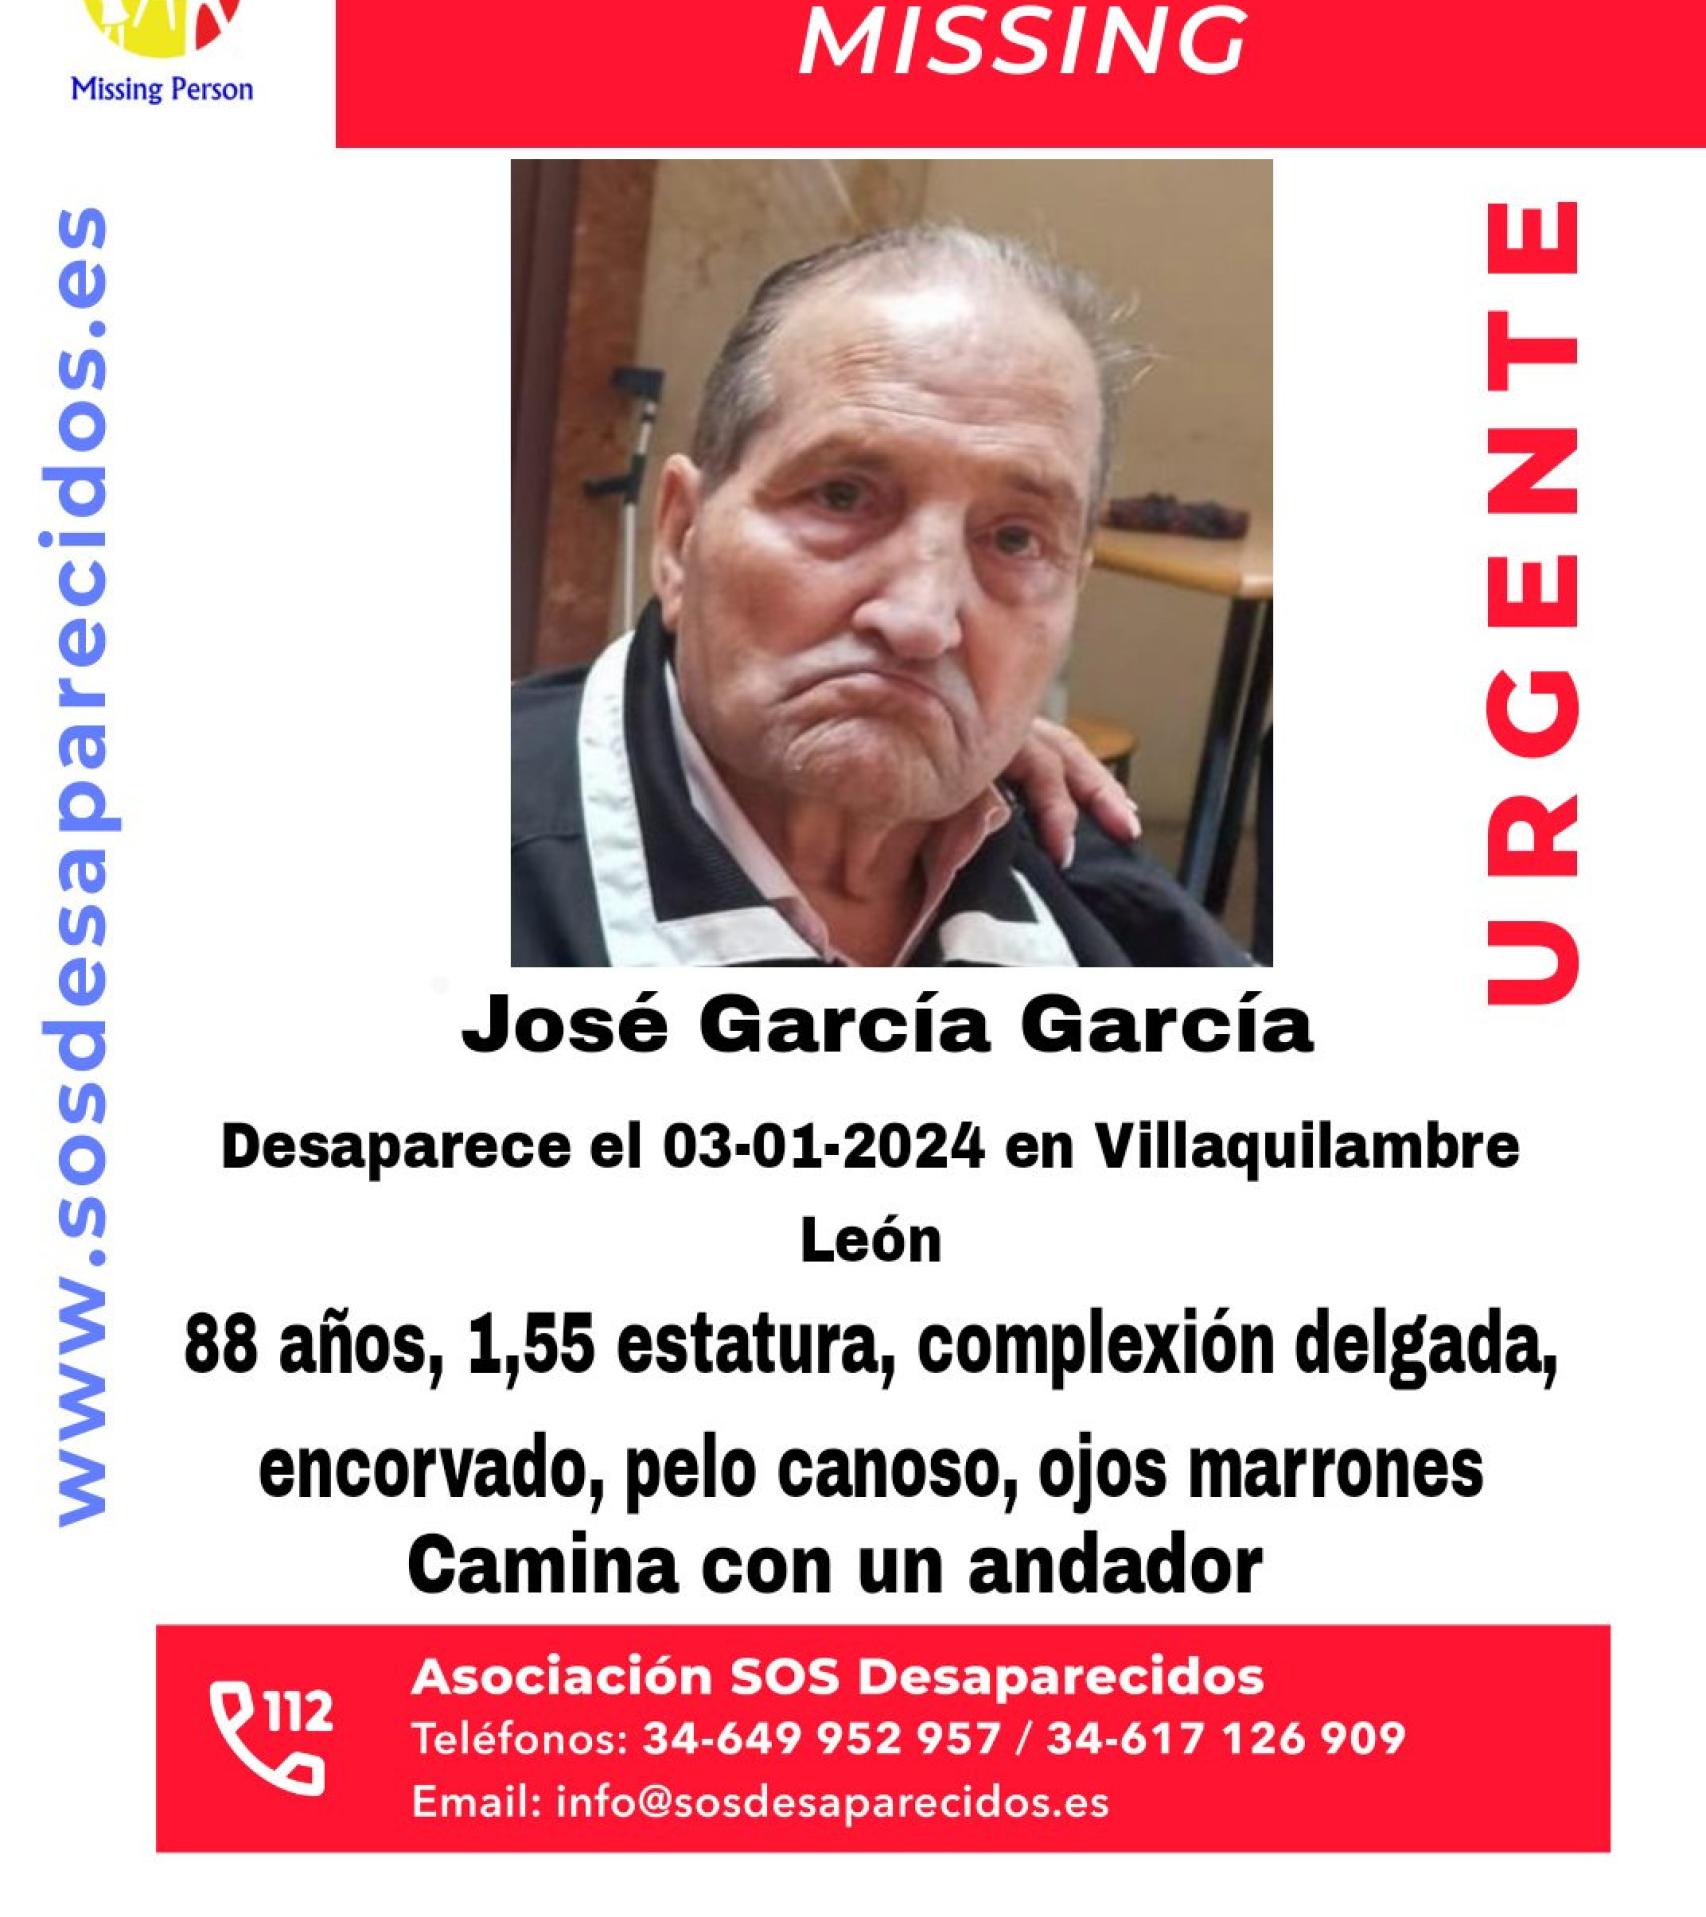 Cartel difundido por SOS Desaparecidos